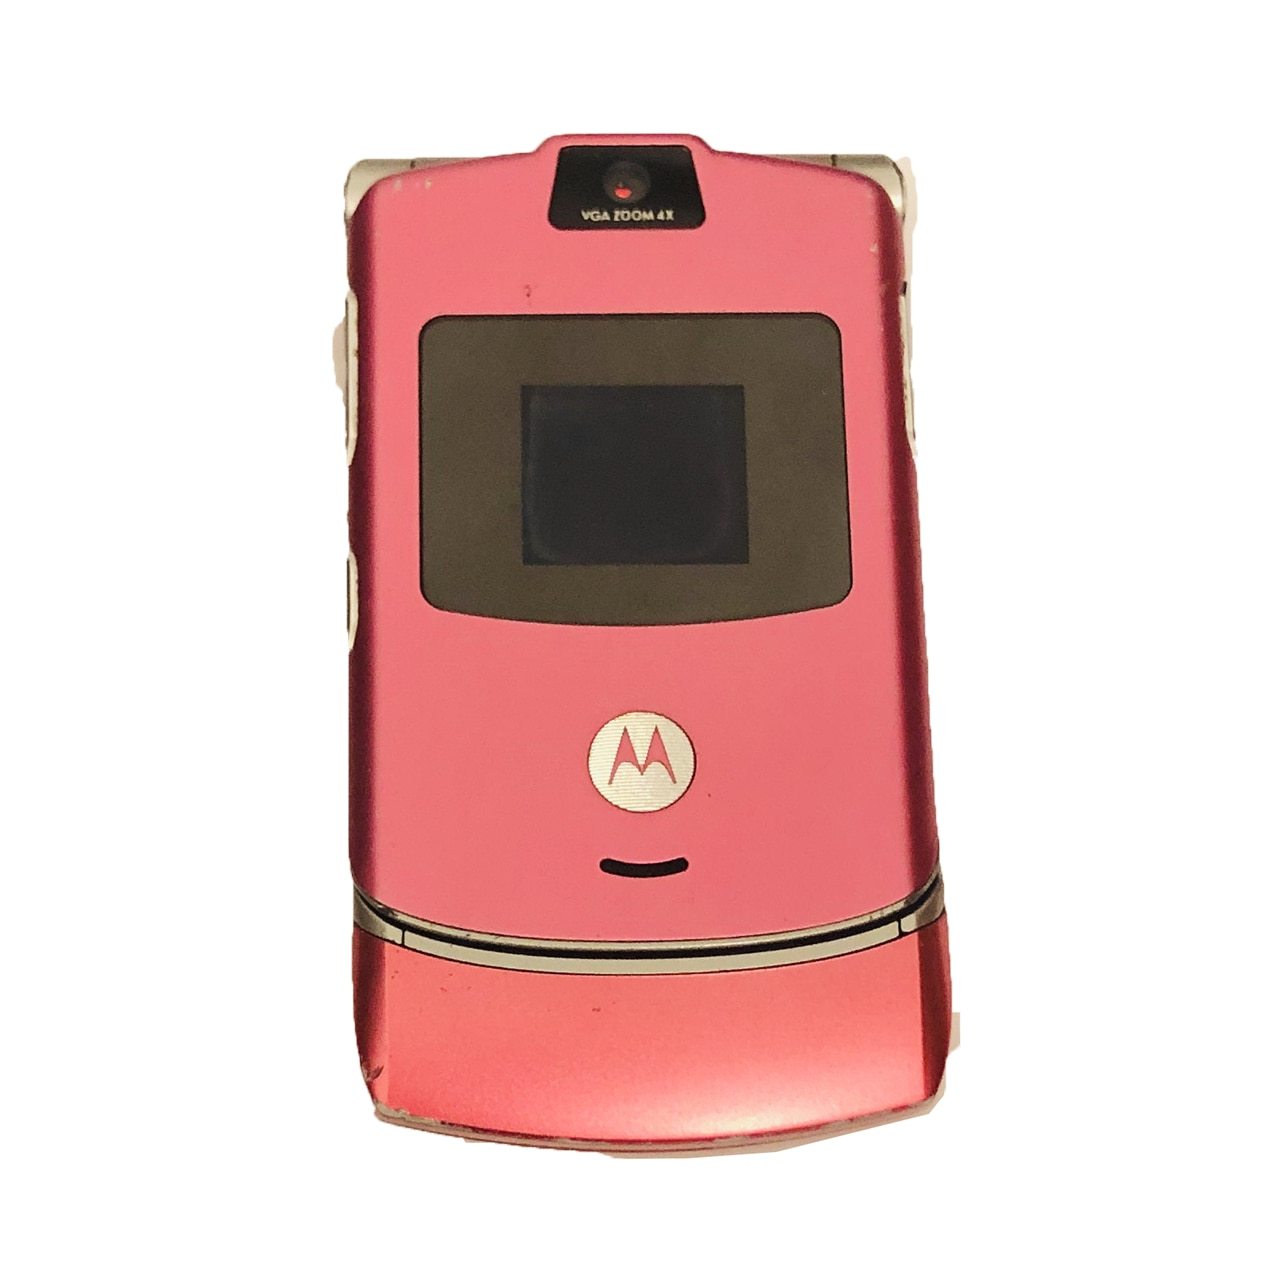 Motorola razr v3 charger